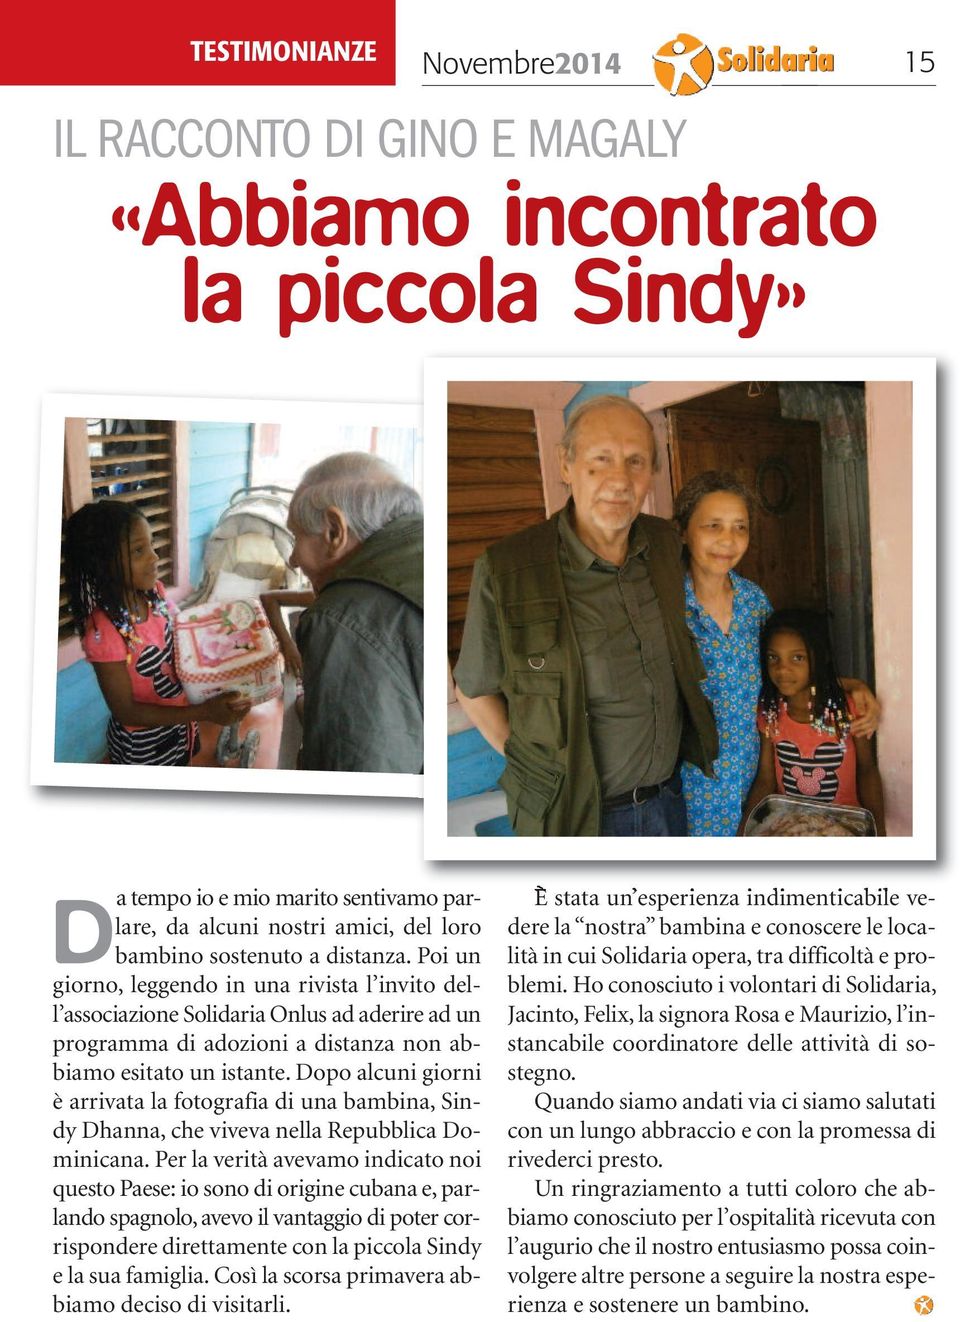 Dopo alcuni giorni è arrivata la fotografia di una bambina, Sindy Dhanna, che viveva nella Repubblica Dominicana.